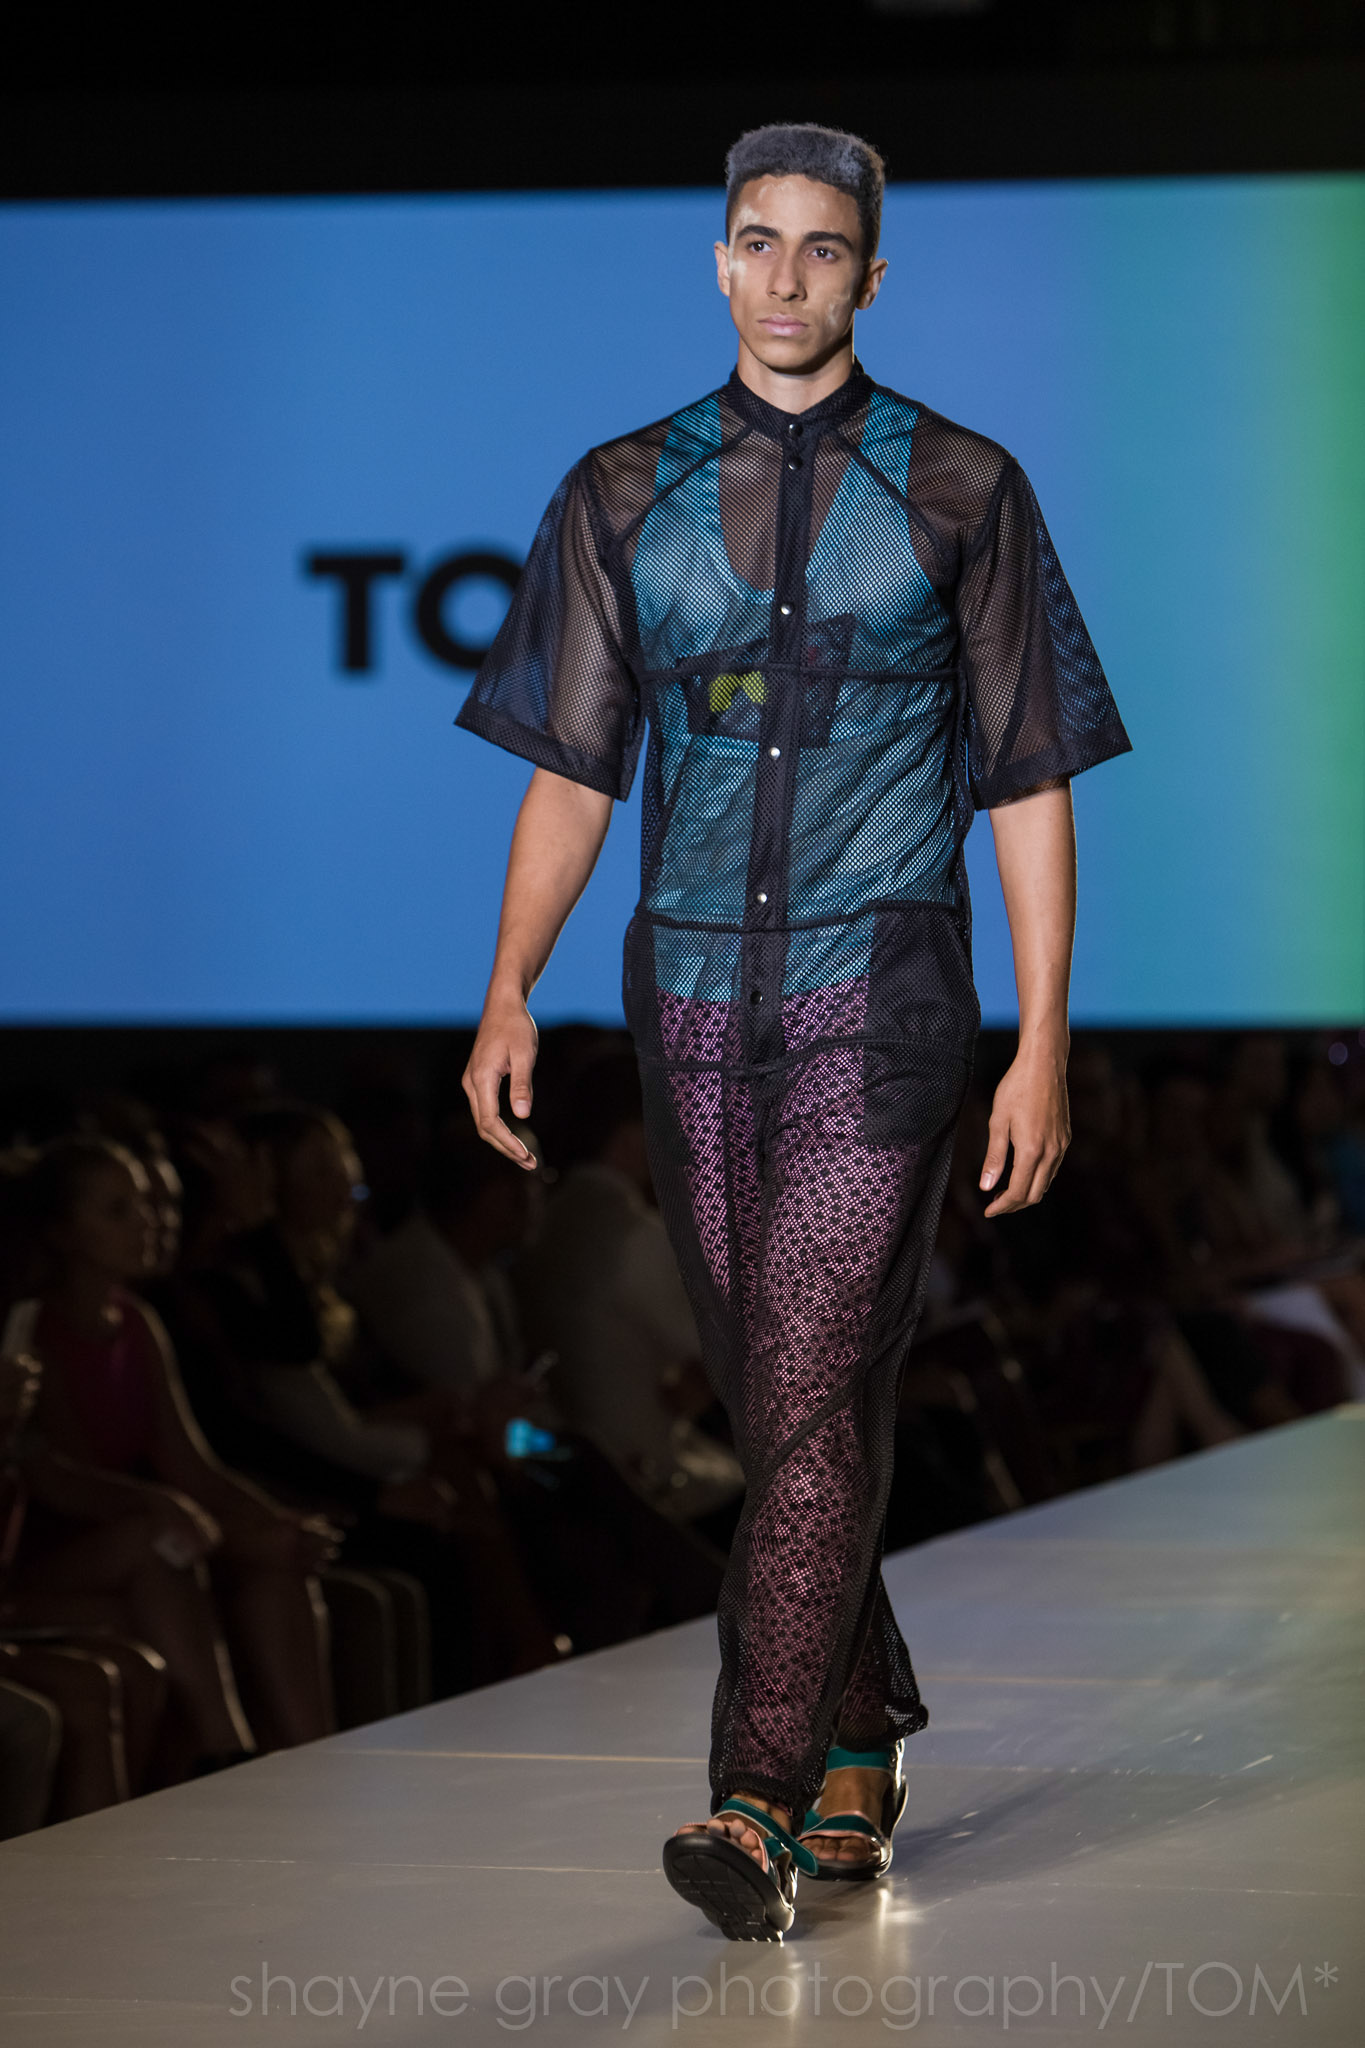 Shayne-Gray-Toronto-men's-fashion_week-TOM-jose-duran-7702.jpg